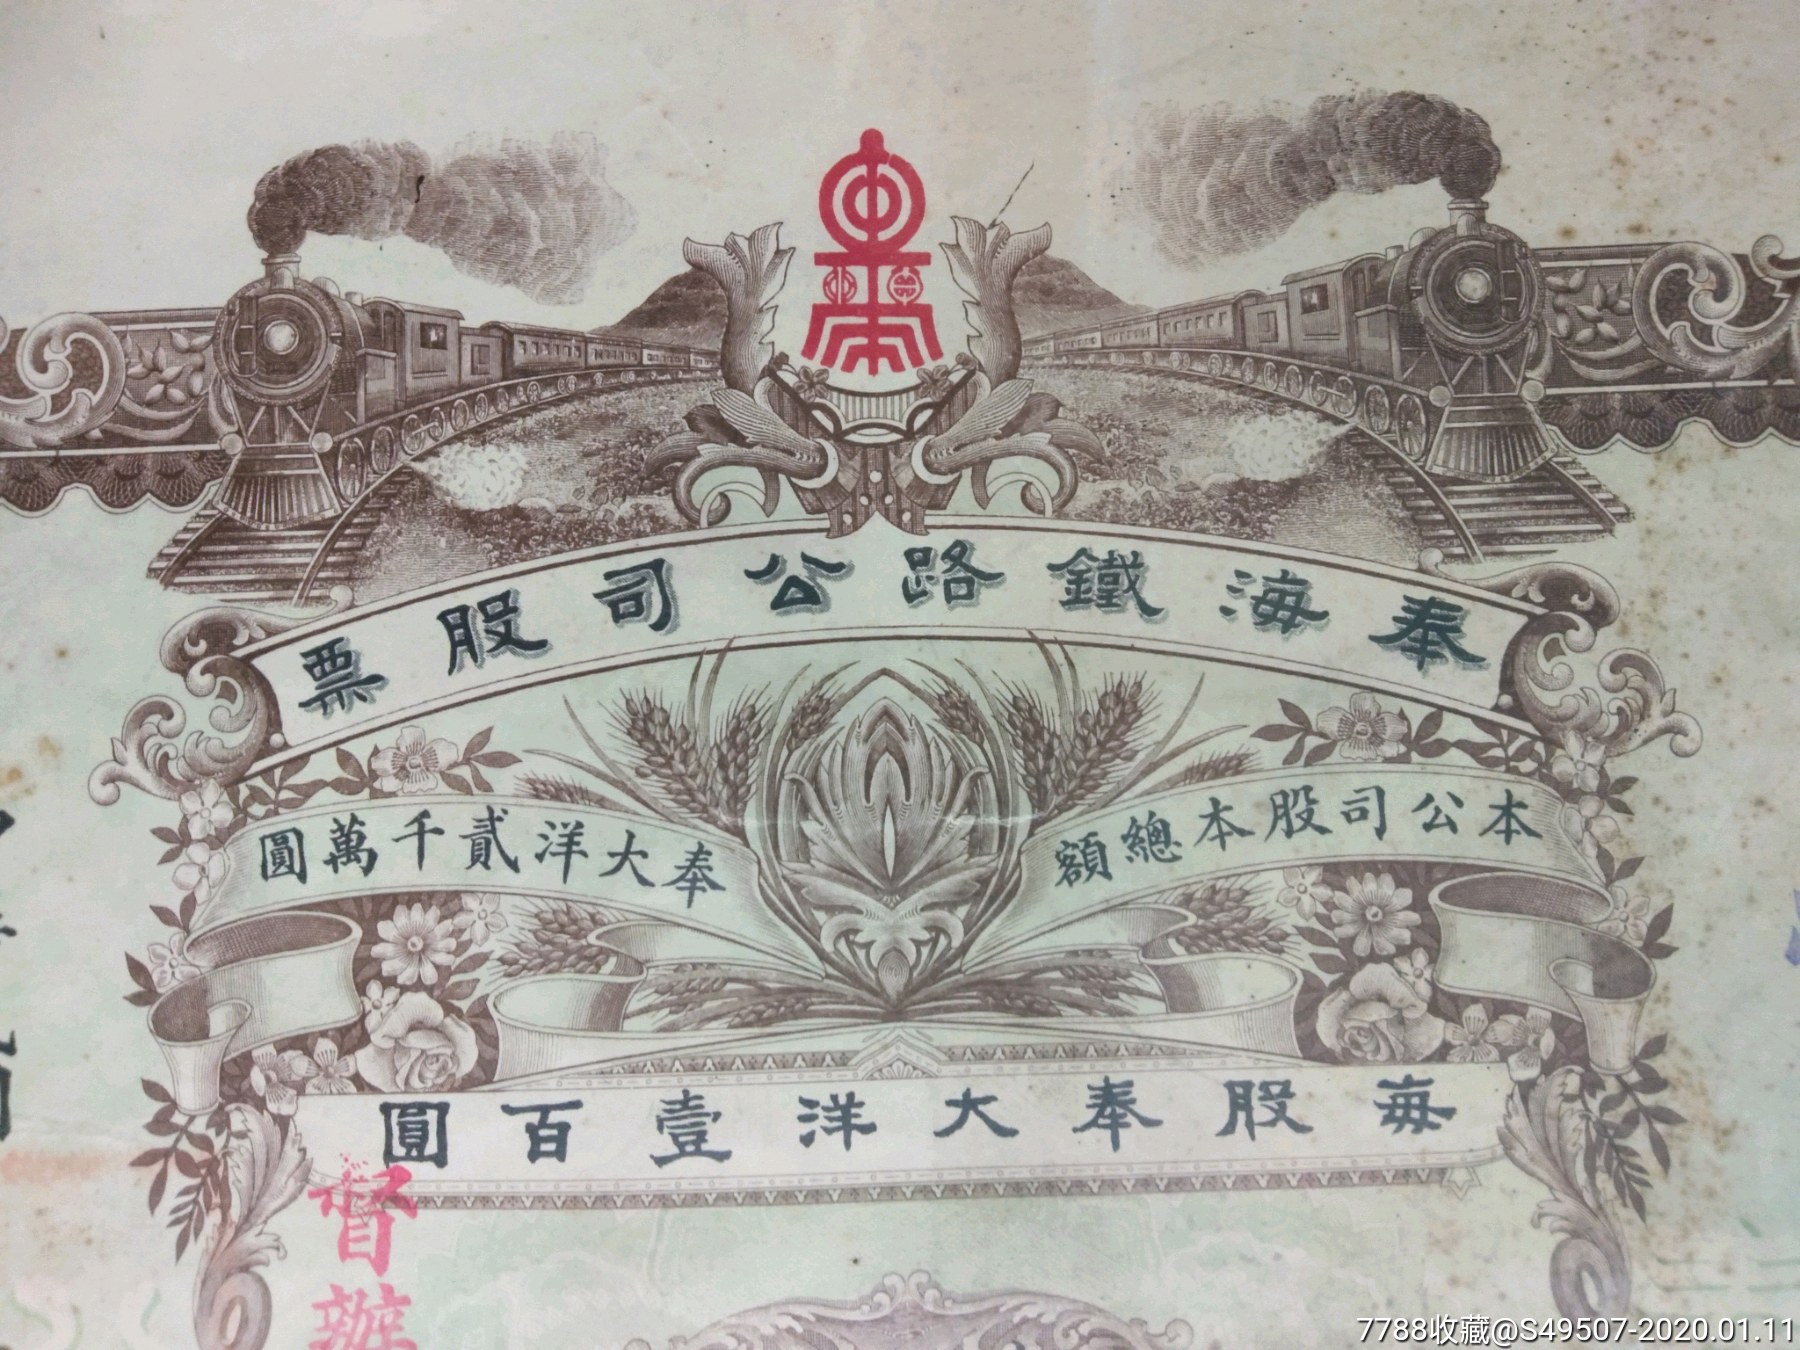 奉海铁路公司股票1股(奉大洋100元)